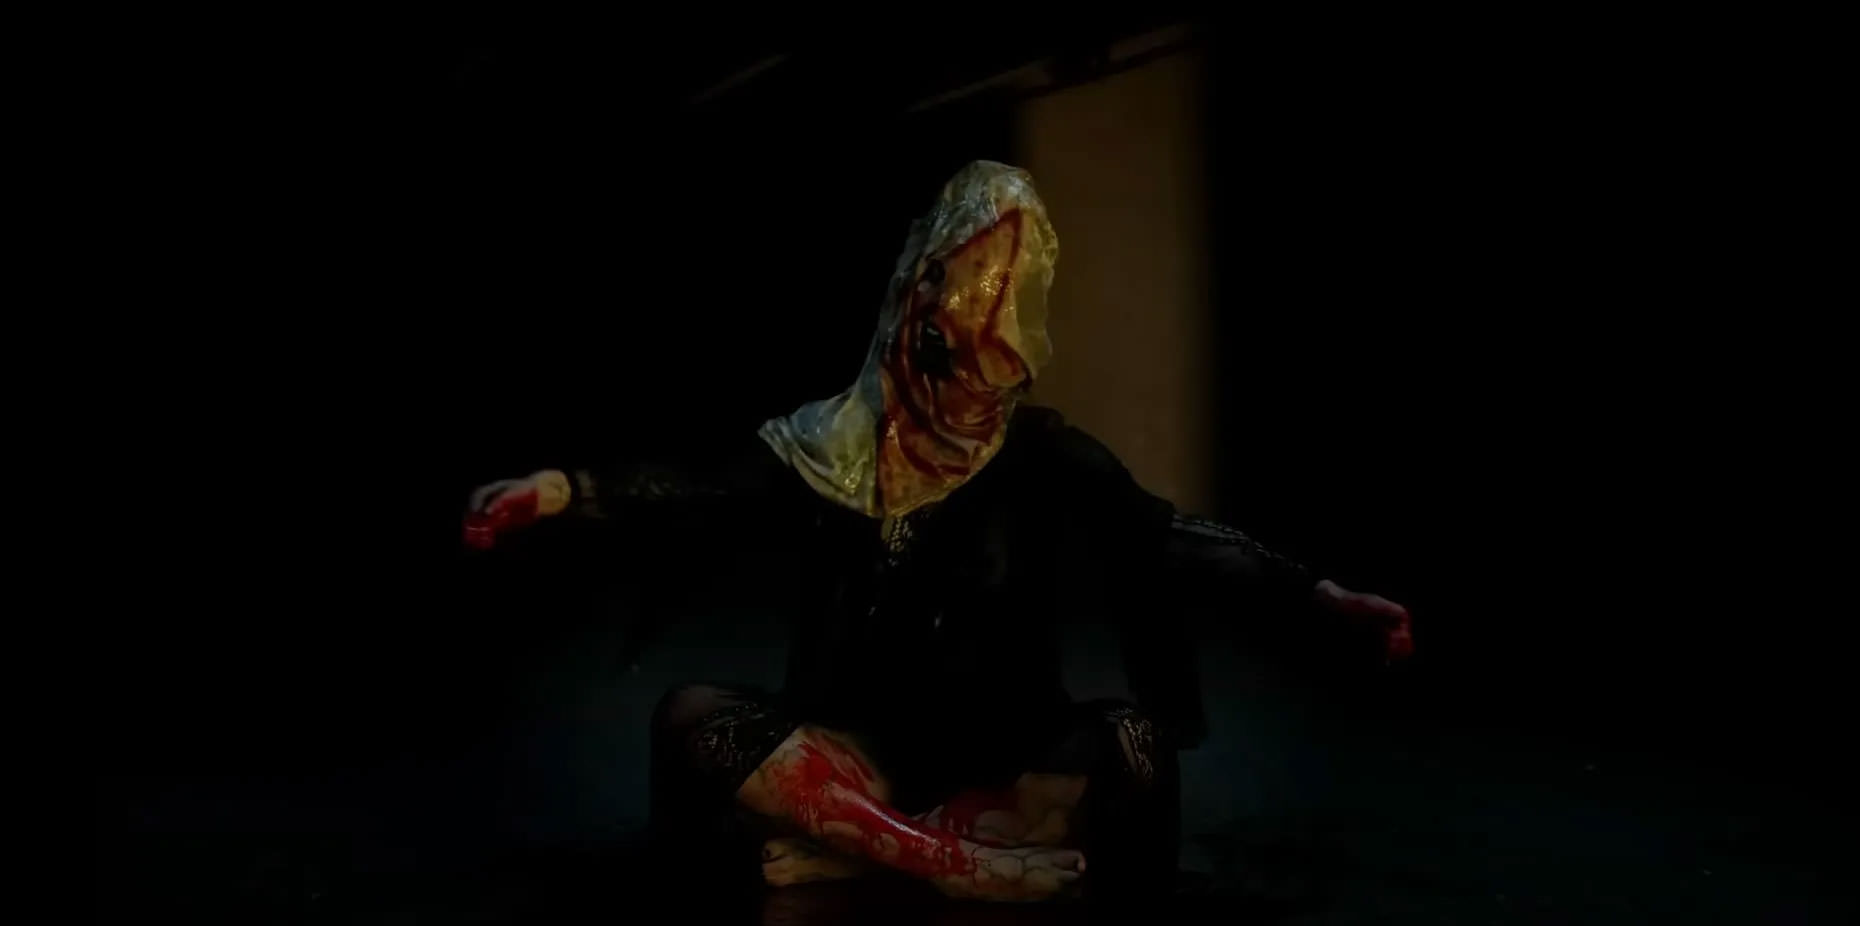 عضوی از یک کالت شیطانی که چهره‌اش با یک کیسه‌ی سفید منقش به طرحی خونین پوشیده شده و روی زمین نشسته و دست‌هایش را باز کرده است در نمایی از فیلم شیطانی به کارگردانی آنتونی دی‌بلاسی